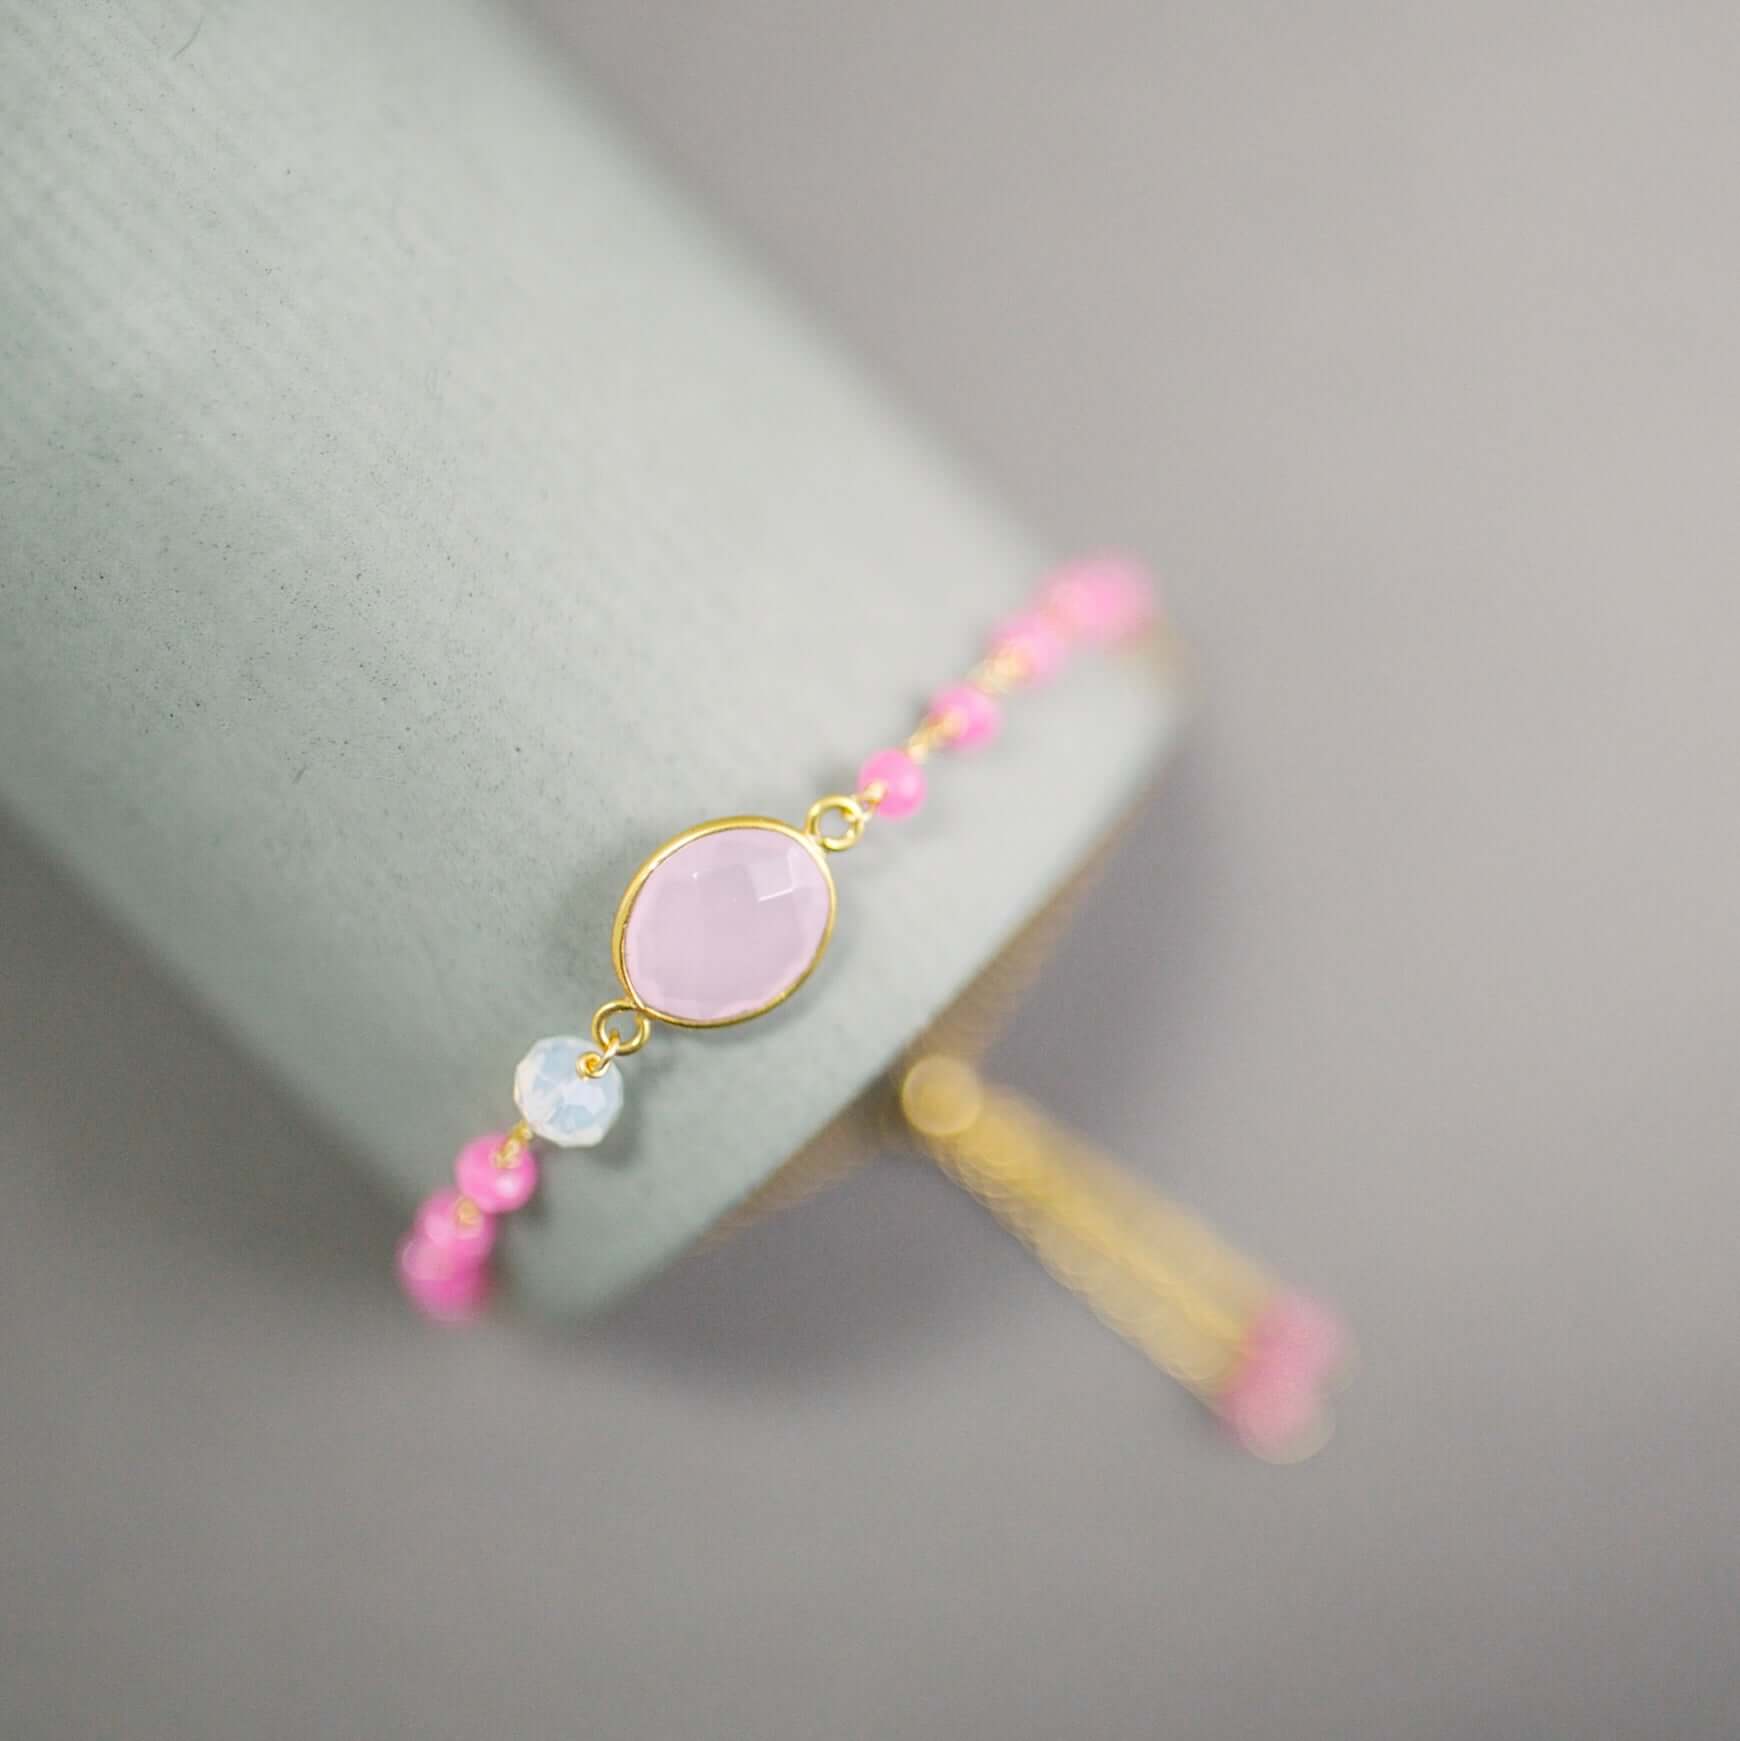 Adjustable Slider Bracelet with Rose quartz and hot pink quartz Gems